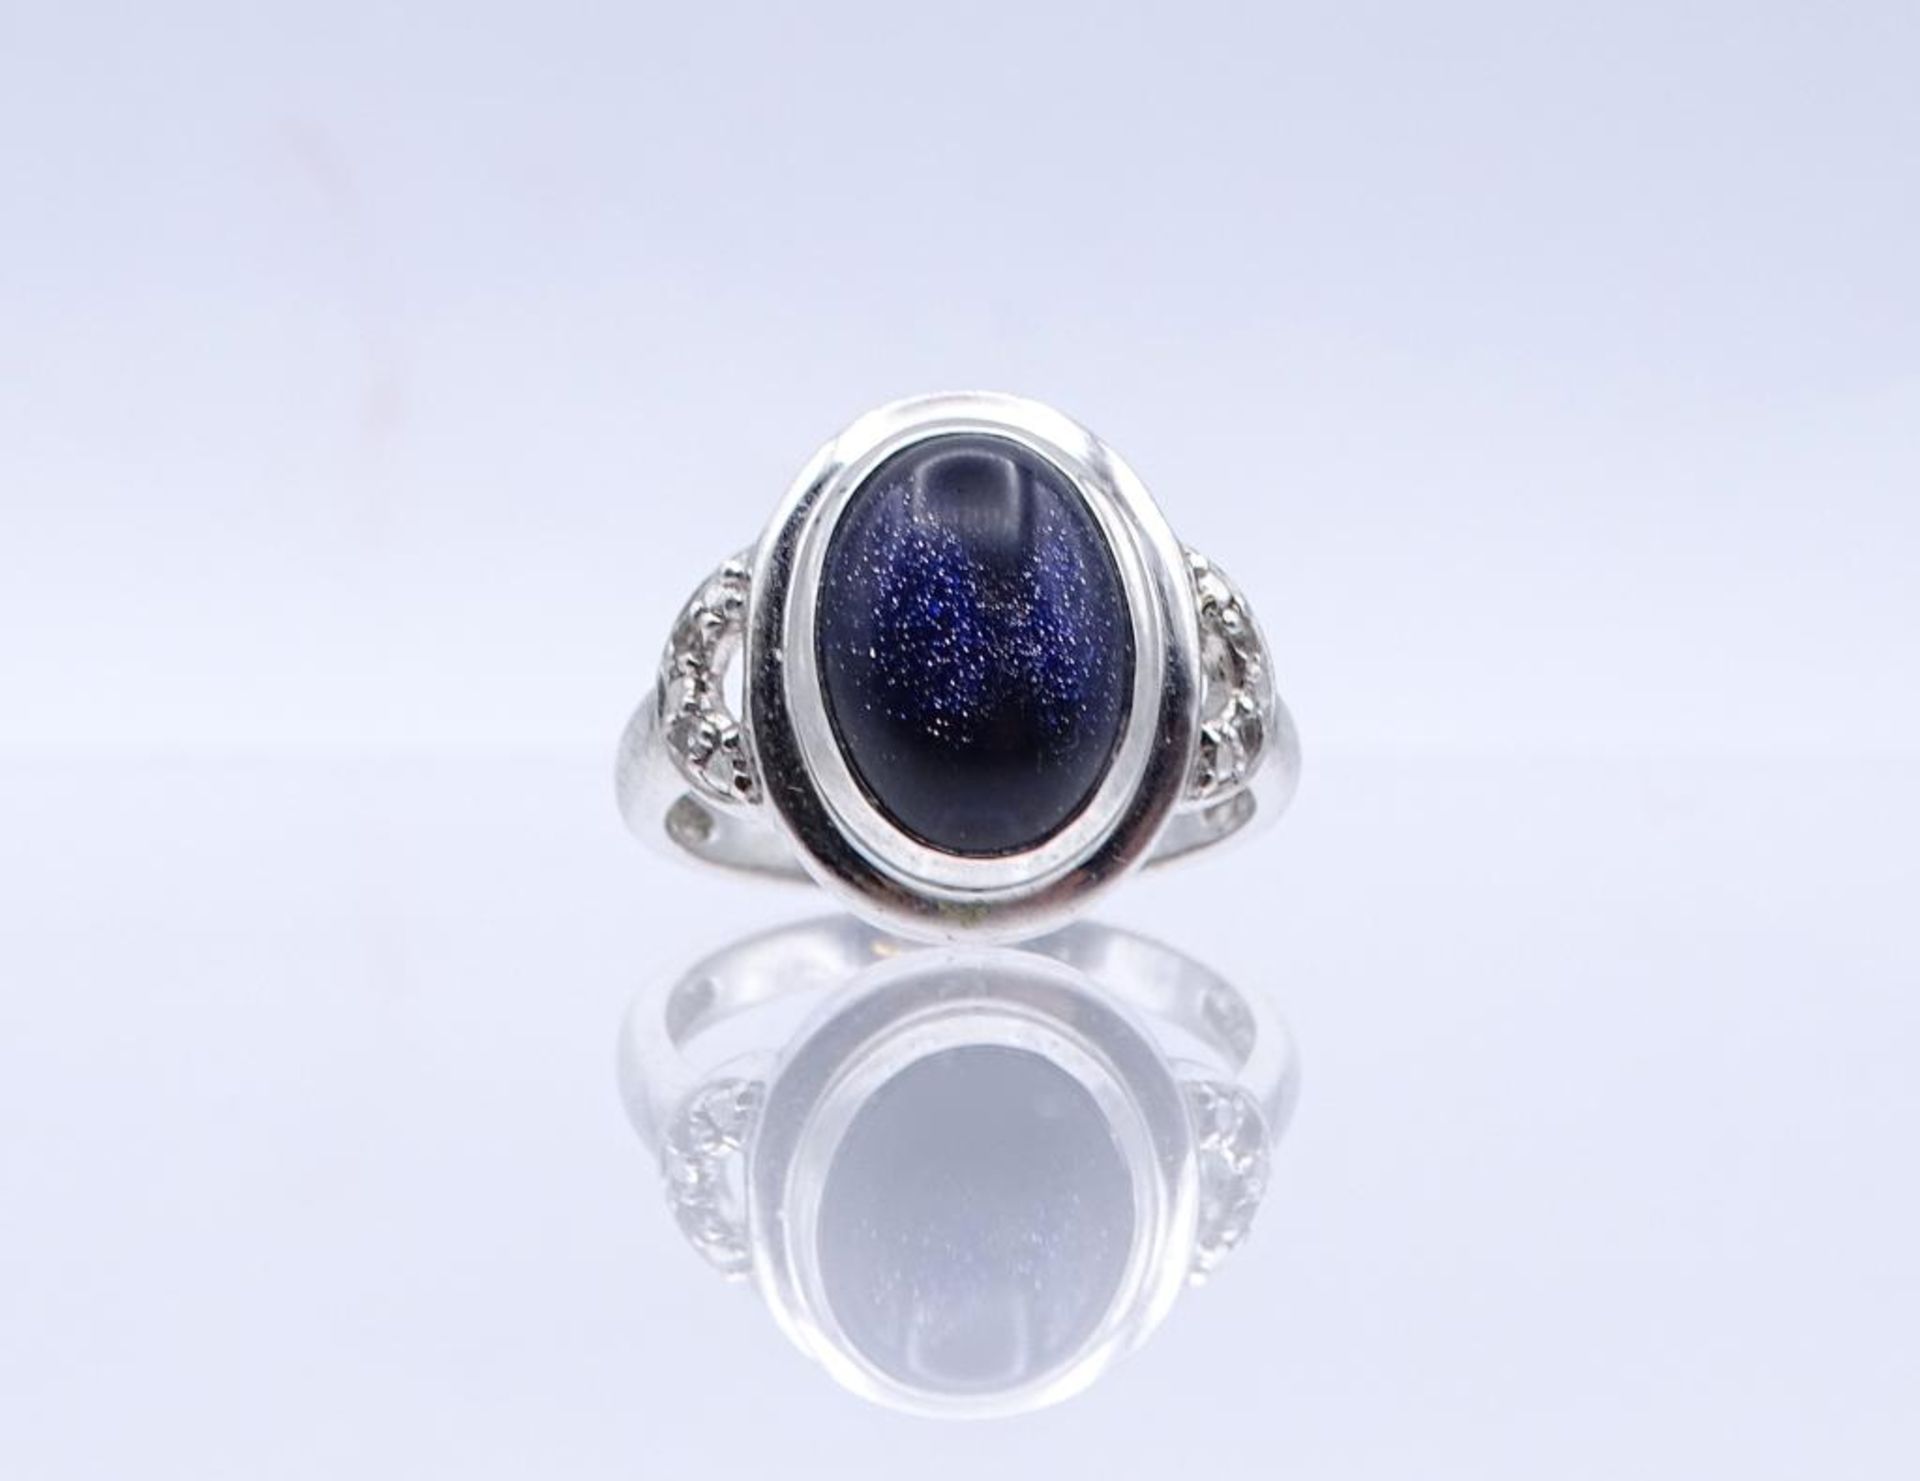 Silber Ring mit Blaufluss Cabochon, Silber 925/000, 6,40gr., RG 60- - -22.61 % buyer's premium on